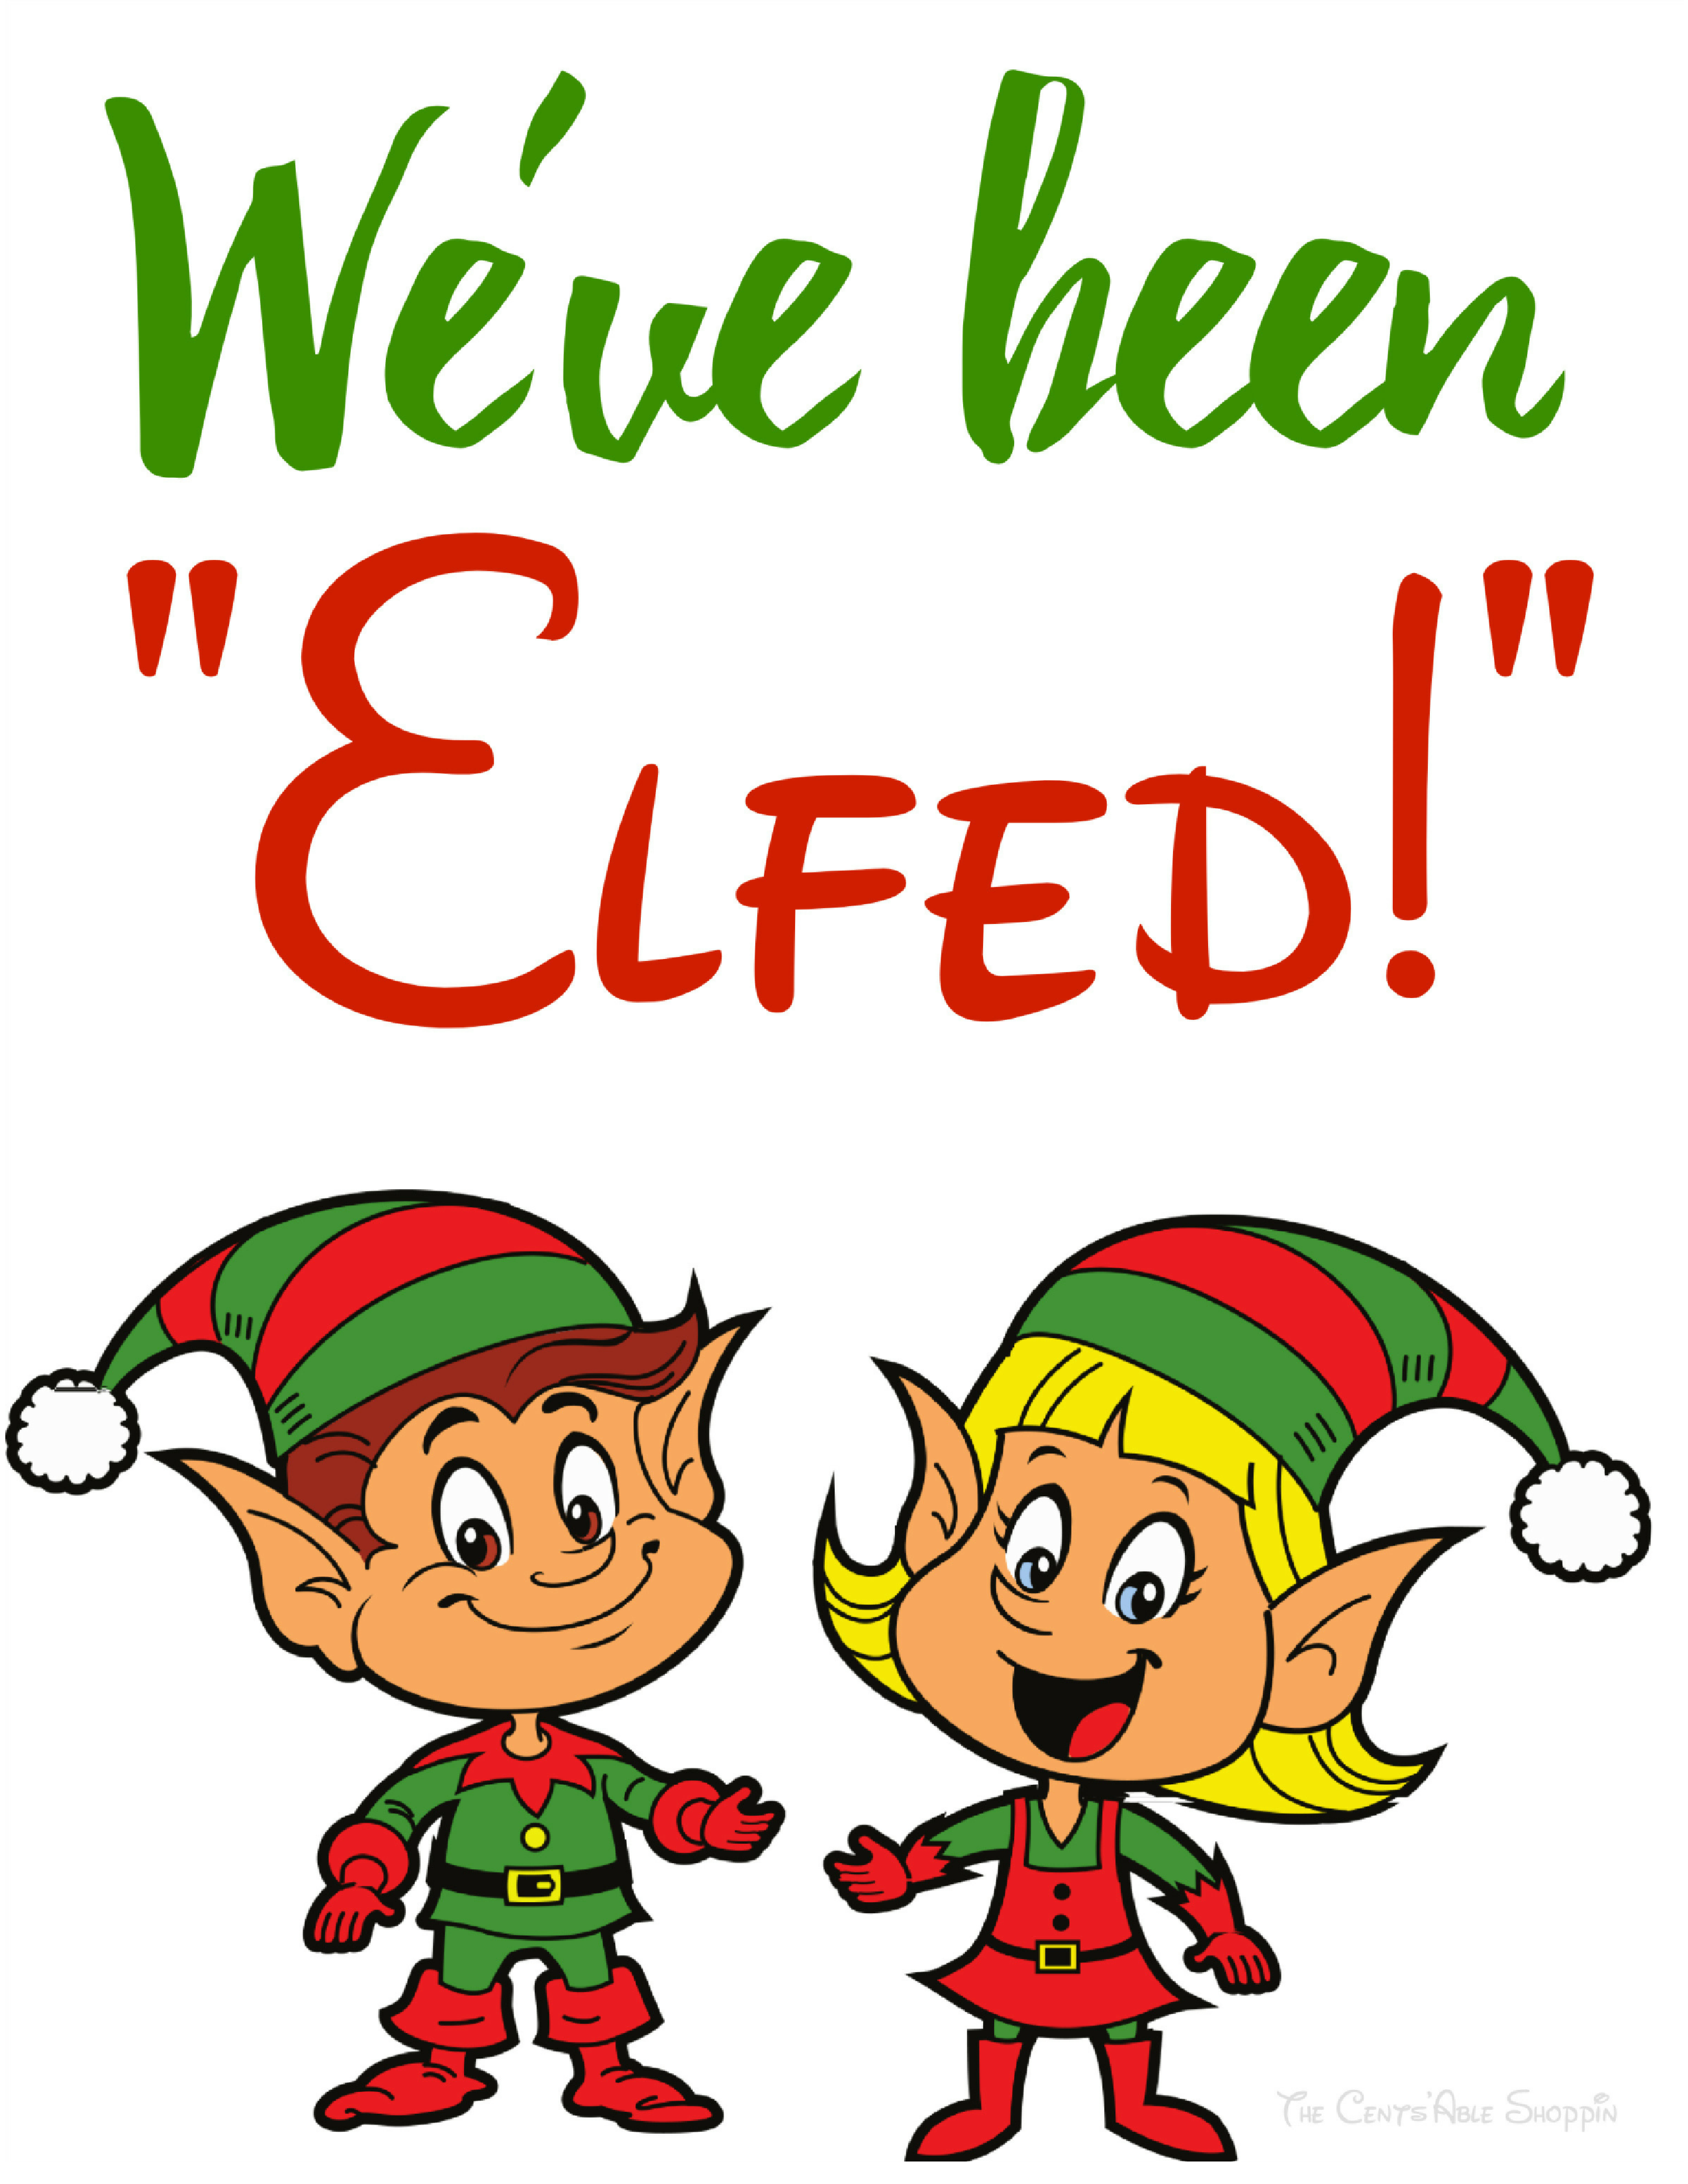 We've been "Elfed!"